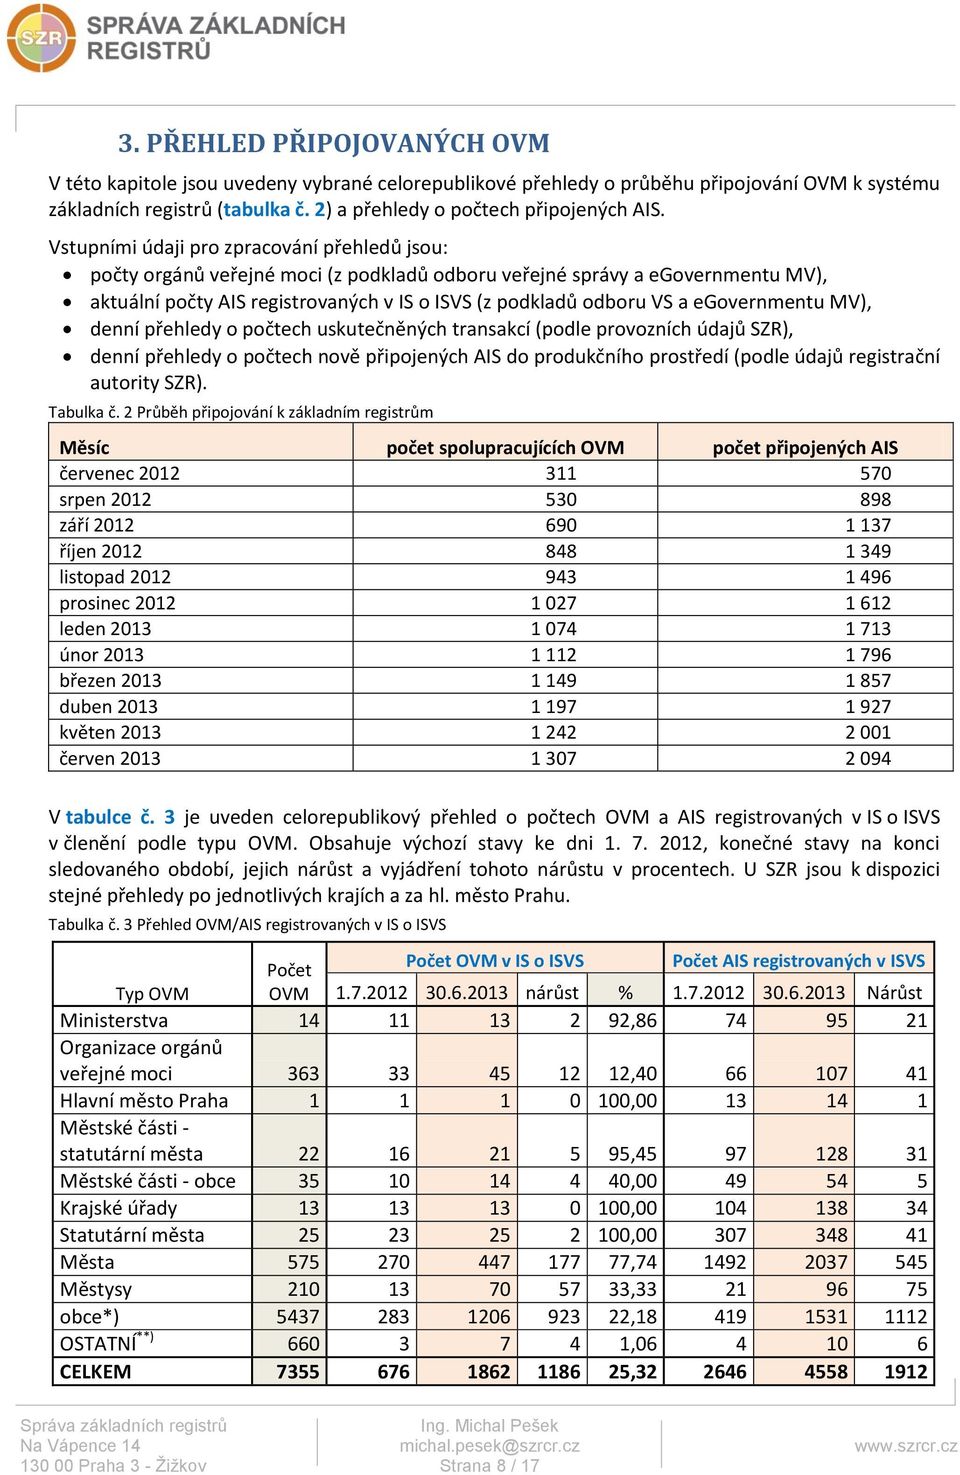 egovernmentu MV), denní přehledy o počtech uskutečněných transakcí (podle provozních údajů SZR), denní přehledy o počtech nově připojených AIS do produkčního prostředí (podle údajů registrační